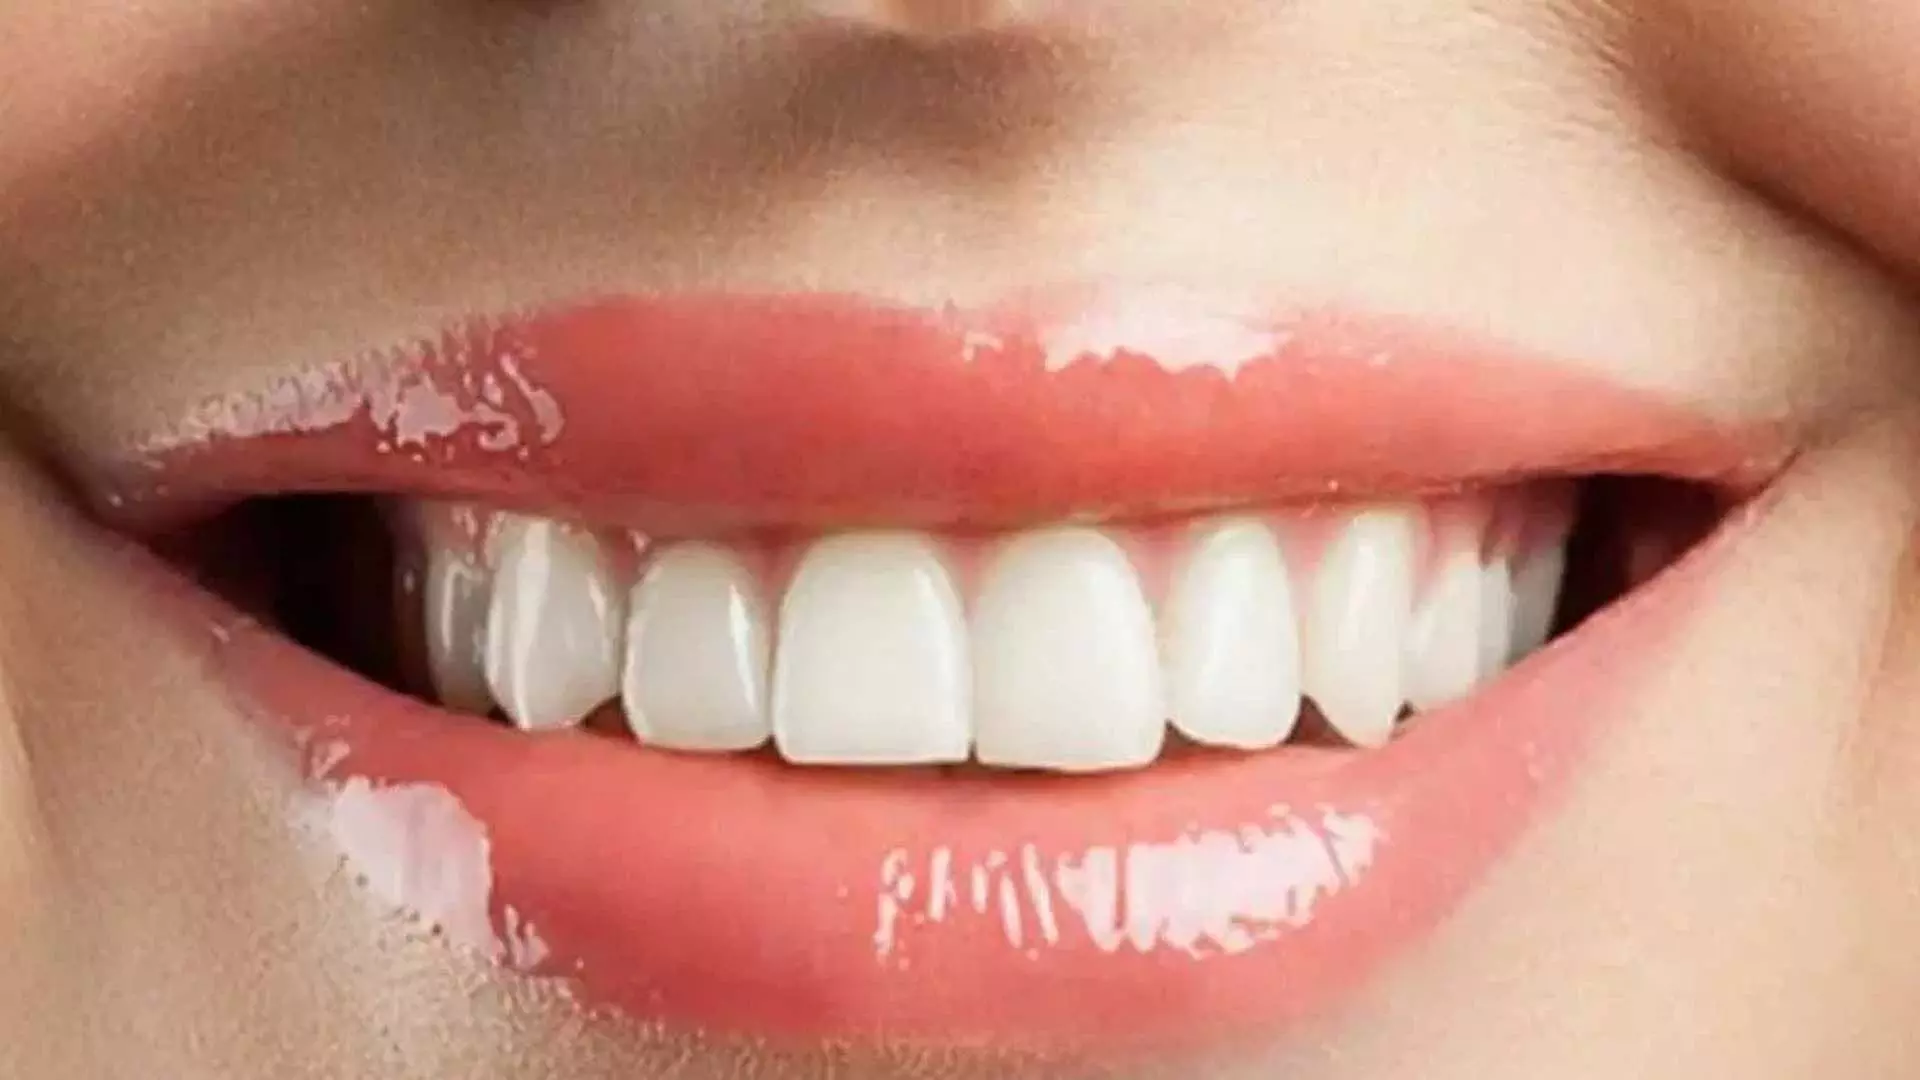 Yellowing of teeth: इन घरेलू नुस्खों की मदद से मिनटों में दूर हो जाएगा दांतों का पीलापन